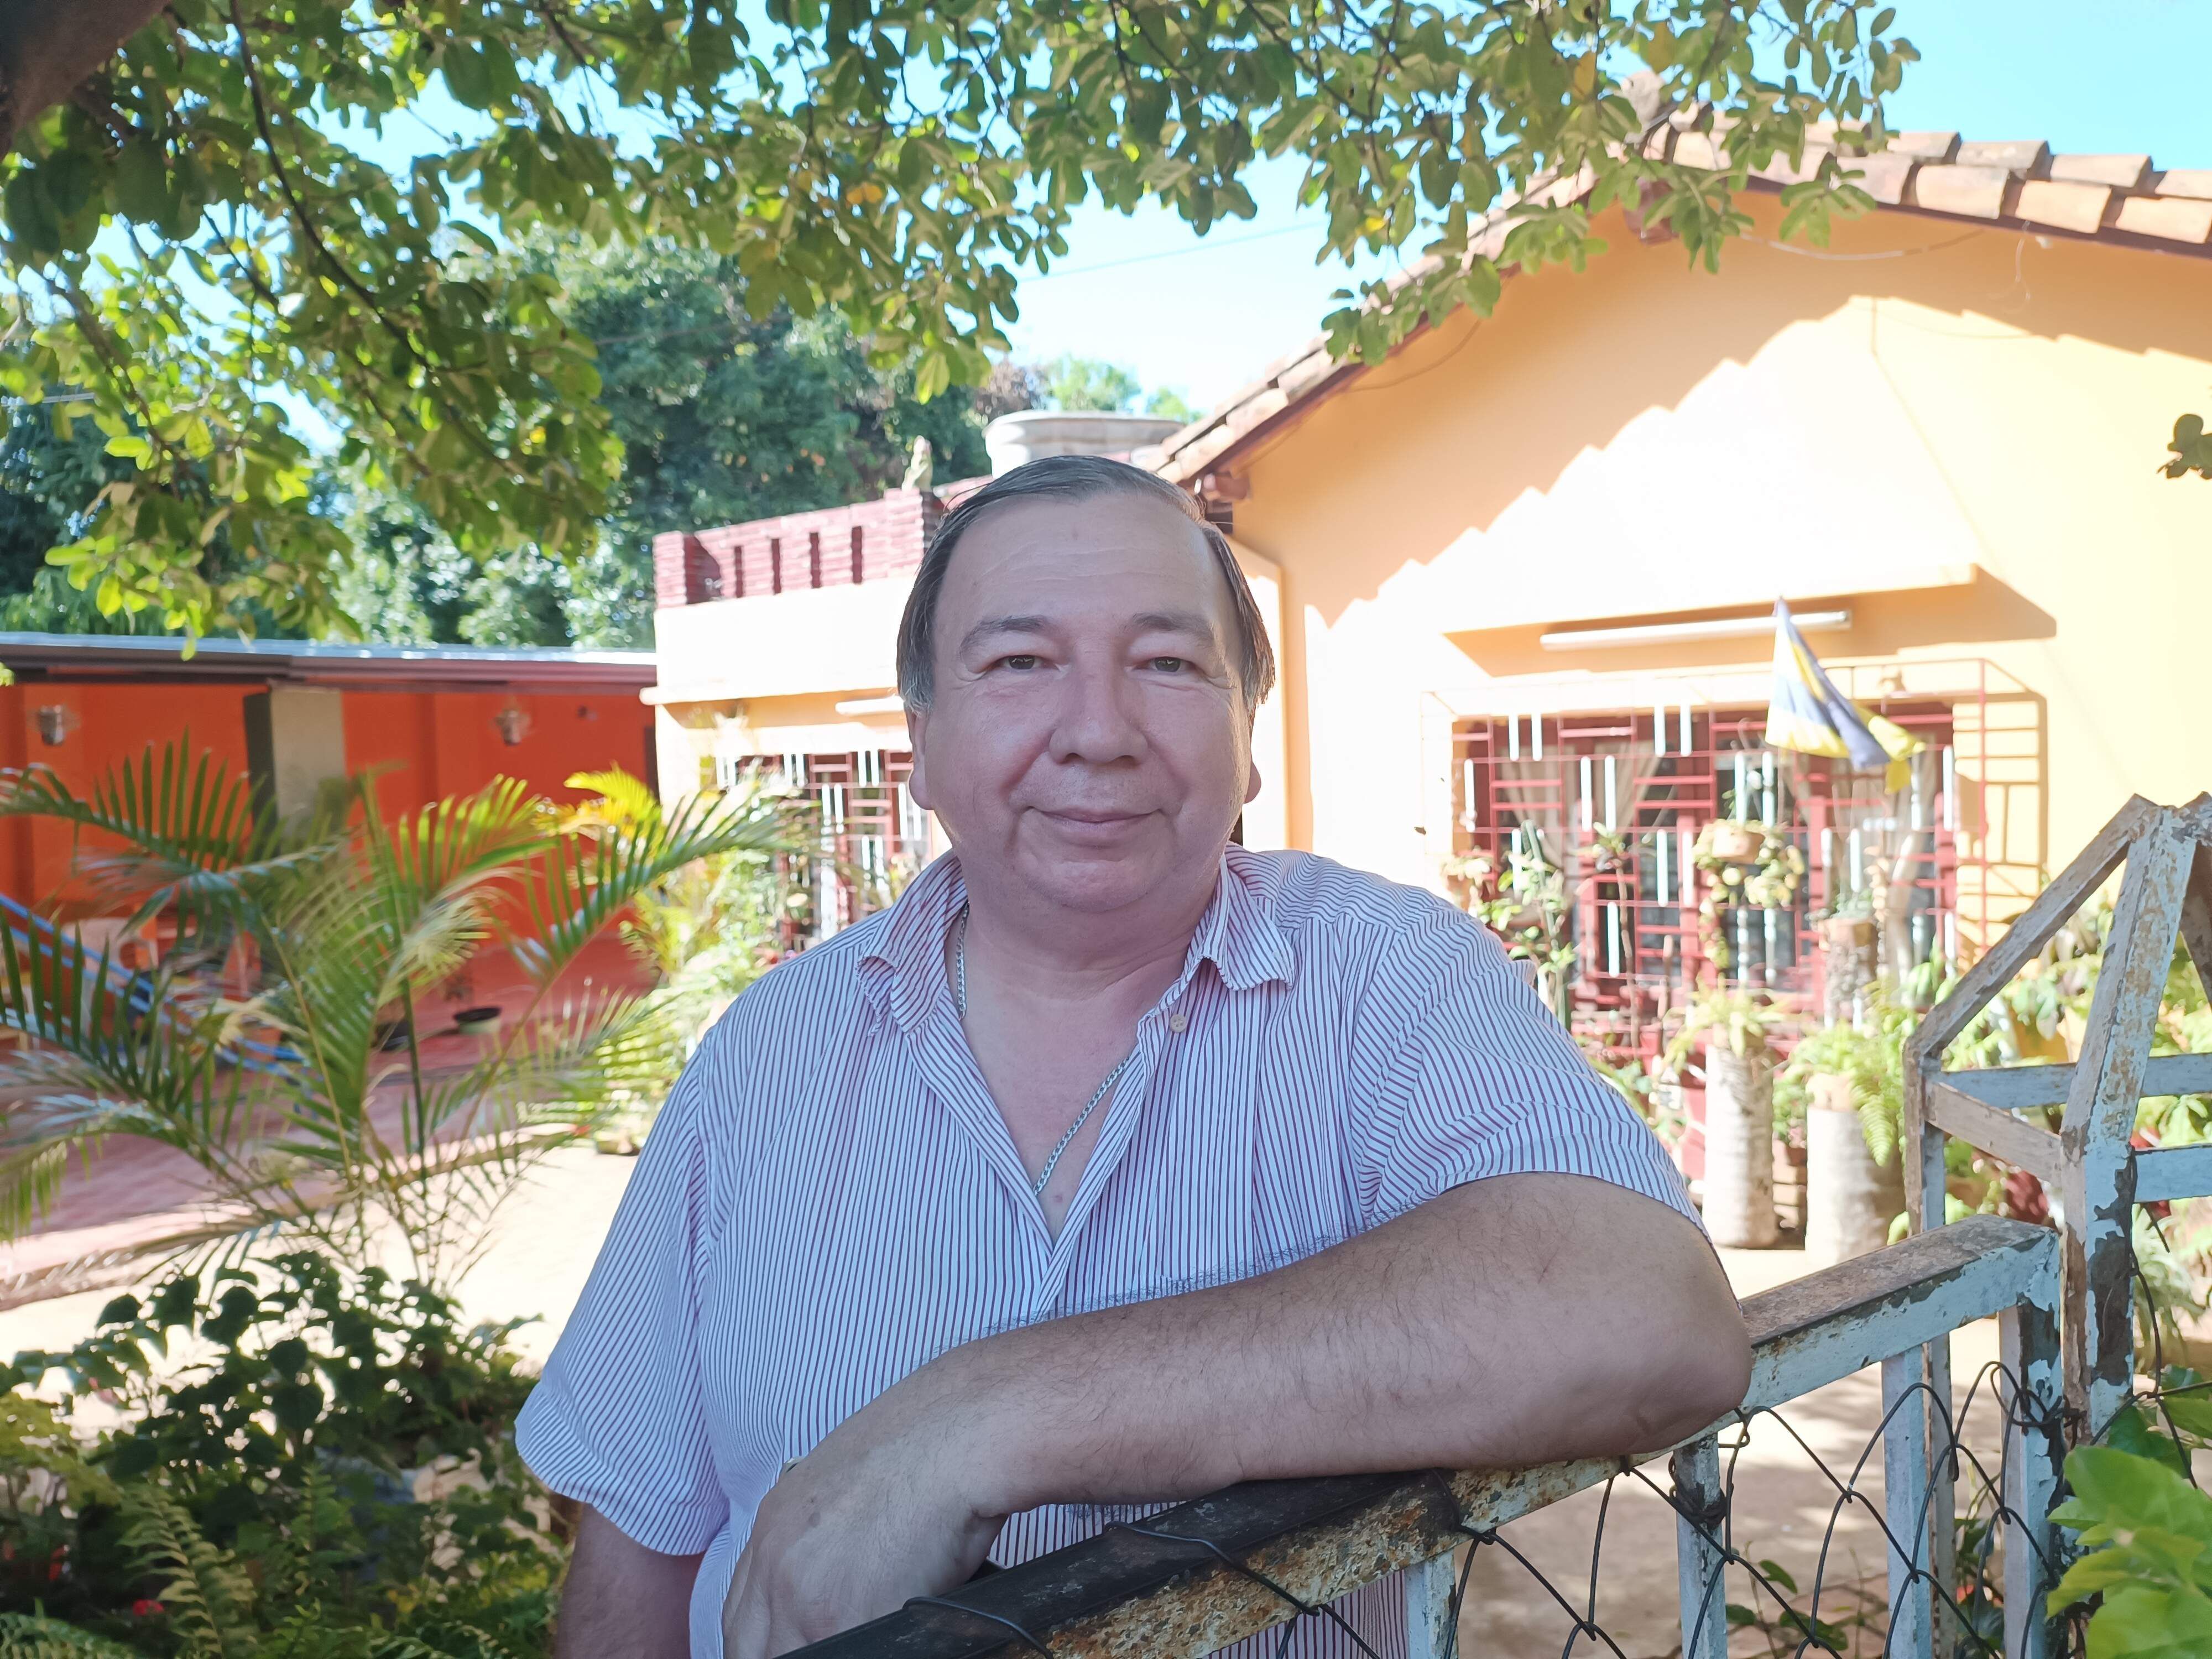 Miguel Ángel Fernández, un vecino del barrio San Juan de Luque. Afirmó que nadie le informó sobre el plan del tren.